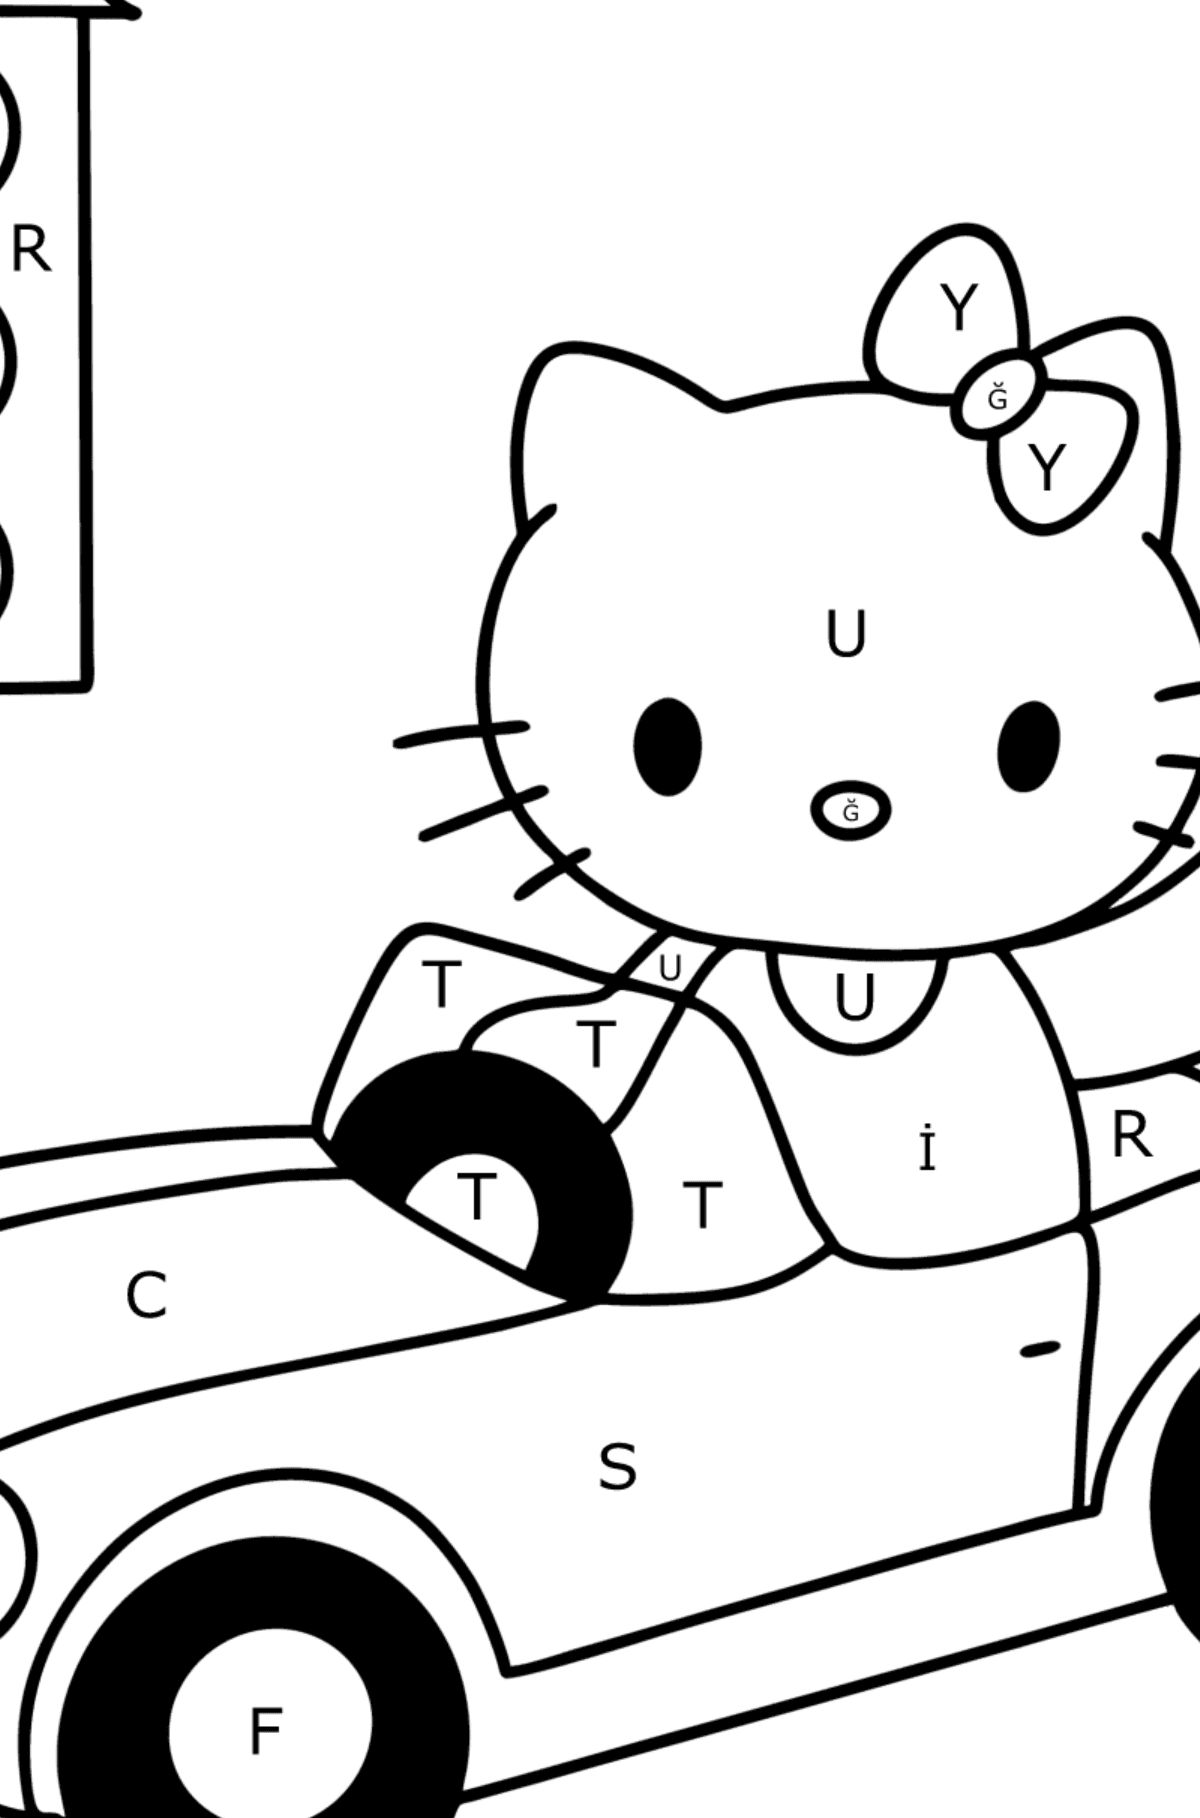 Boyama sayfası Hello Kitty ve araba - Harflerle Boyama çocuklar için